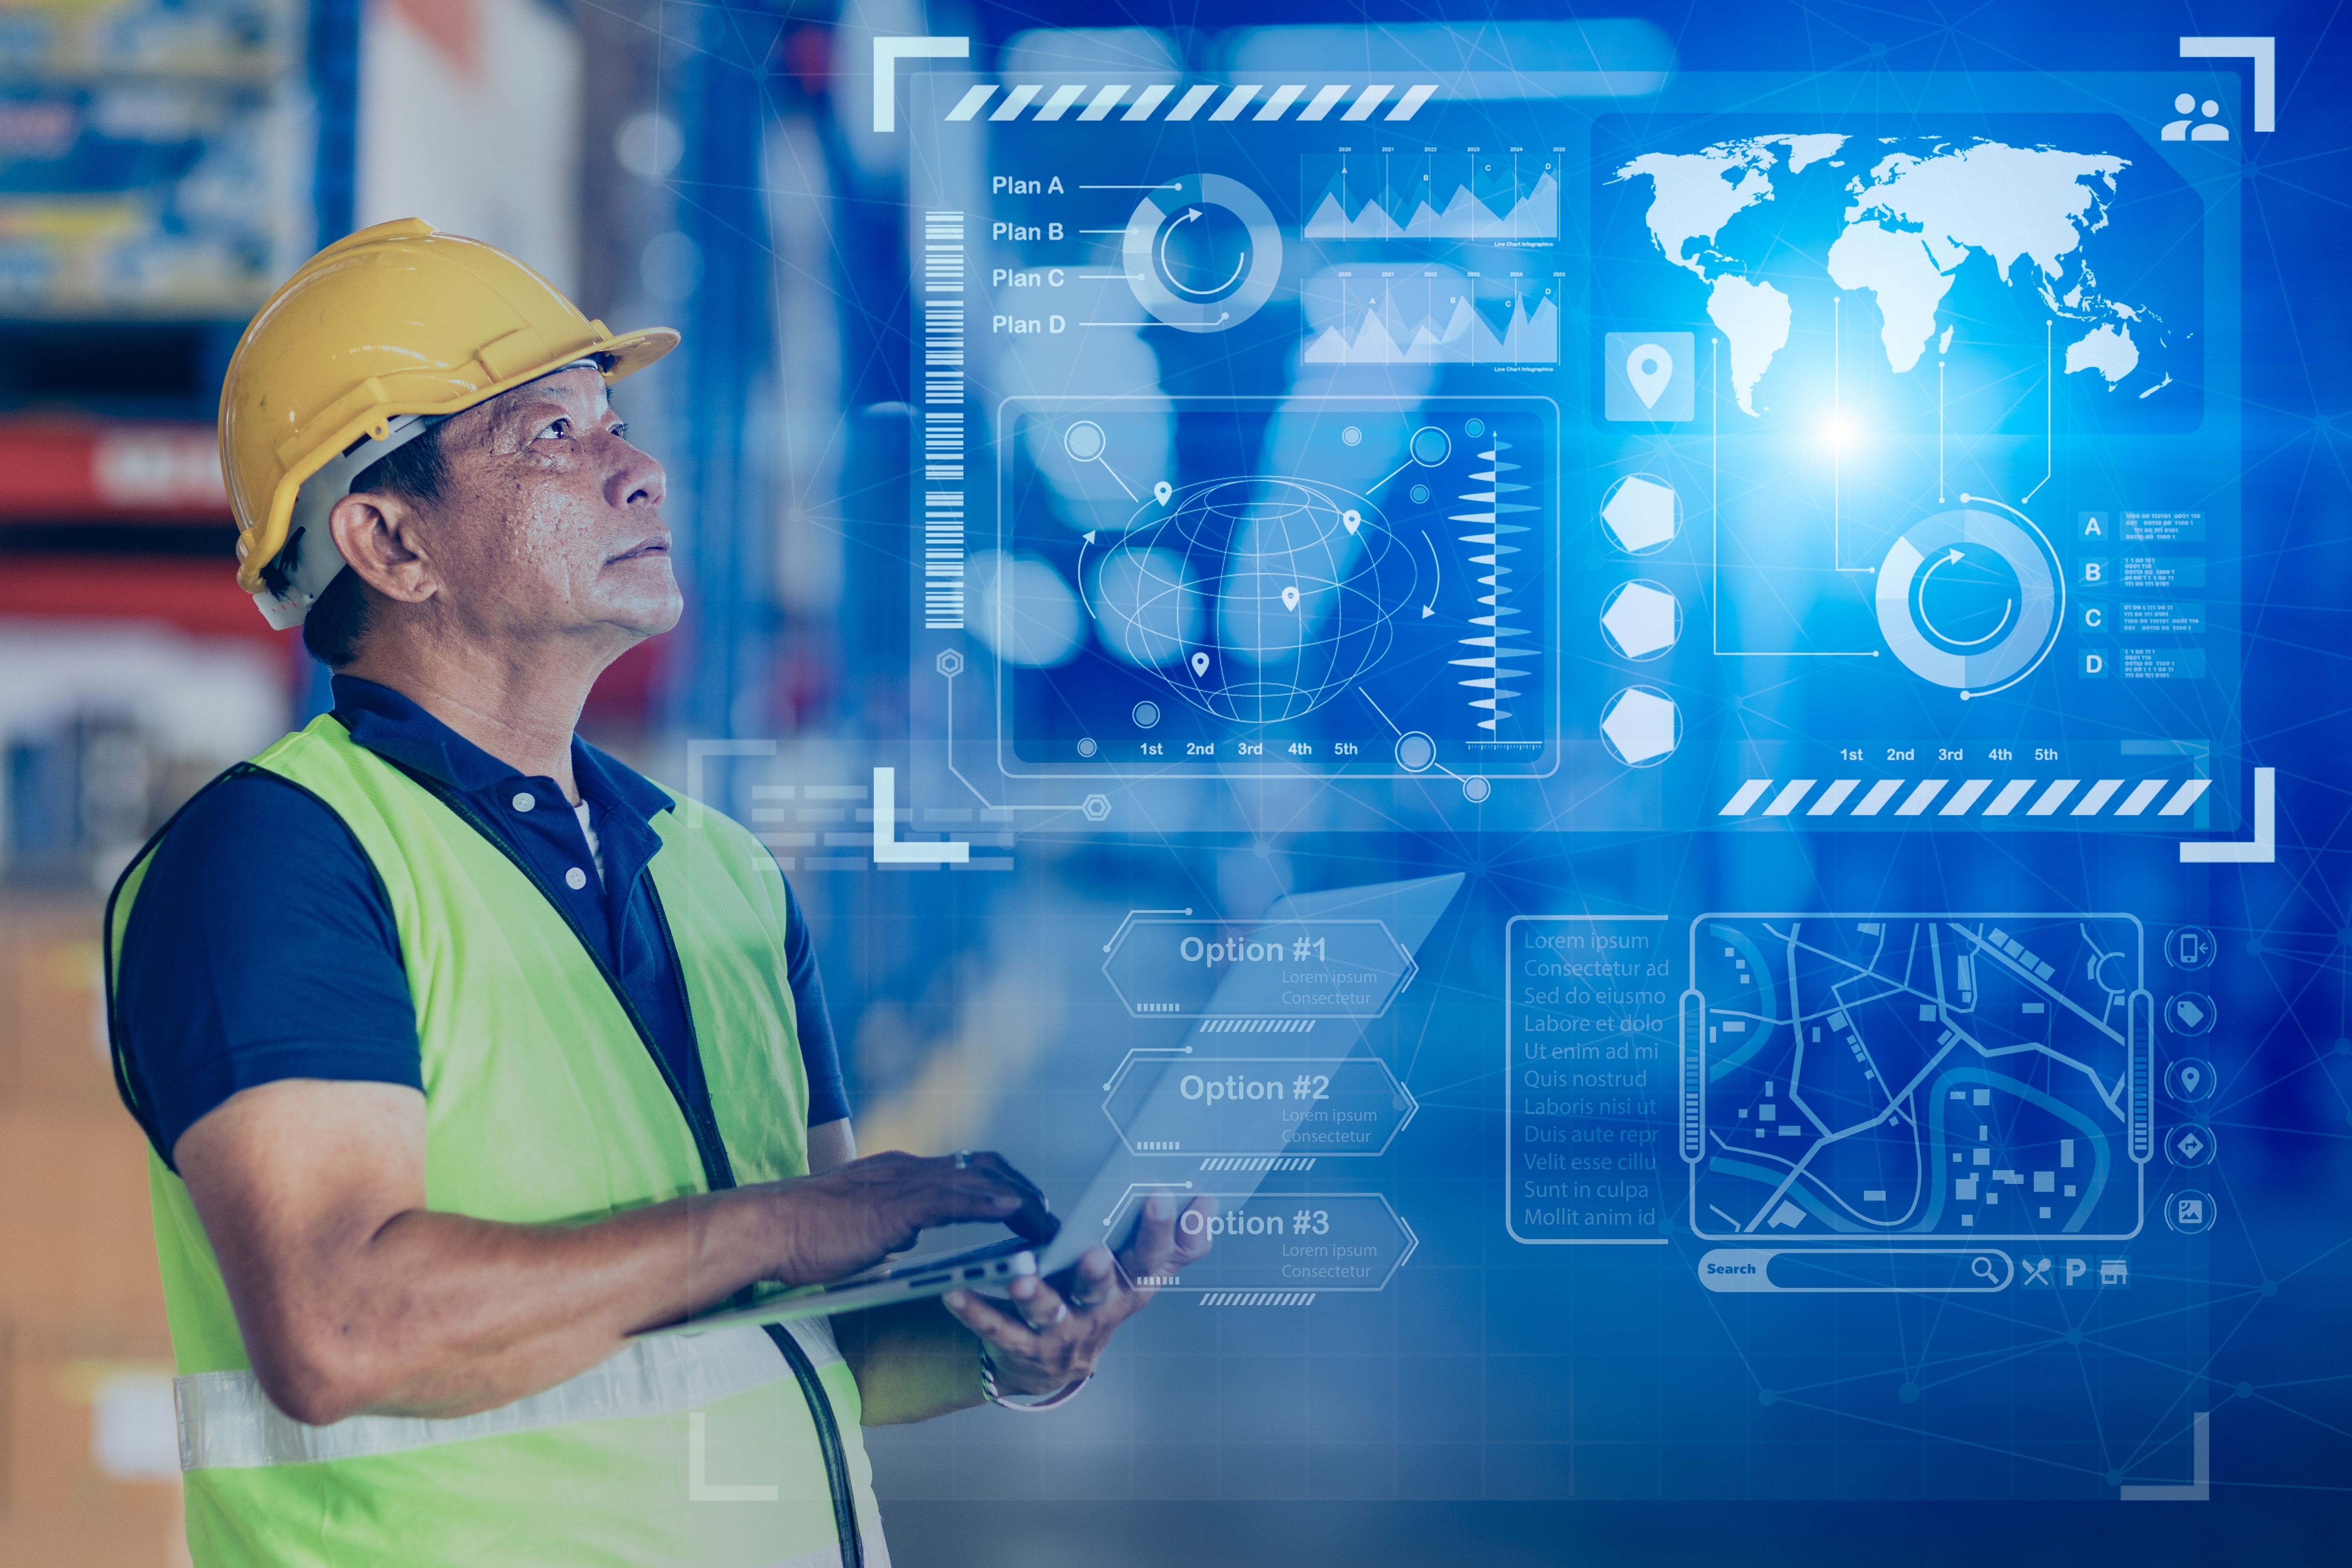 La automatización de procesos en servicios de logística y transporte ayudará a generar valor para los clientes a través de la tecnología.